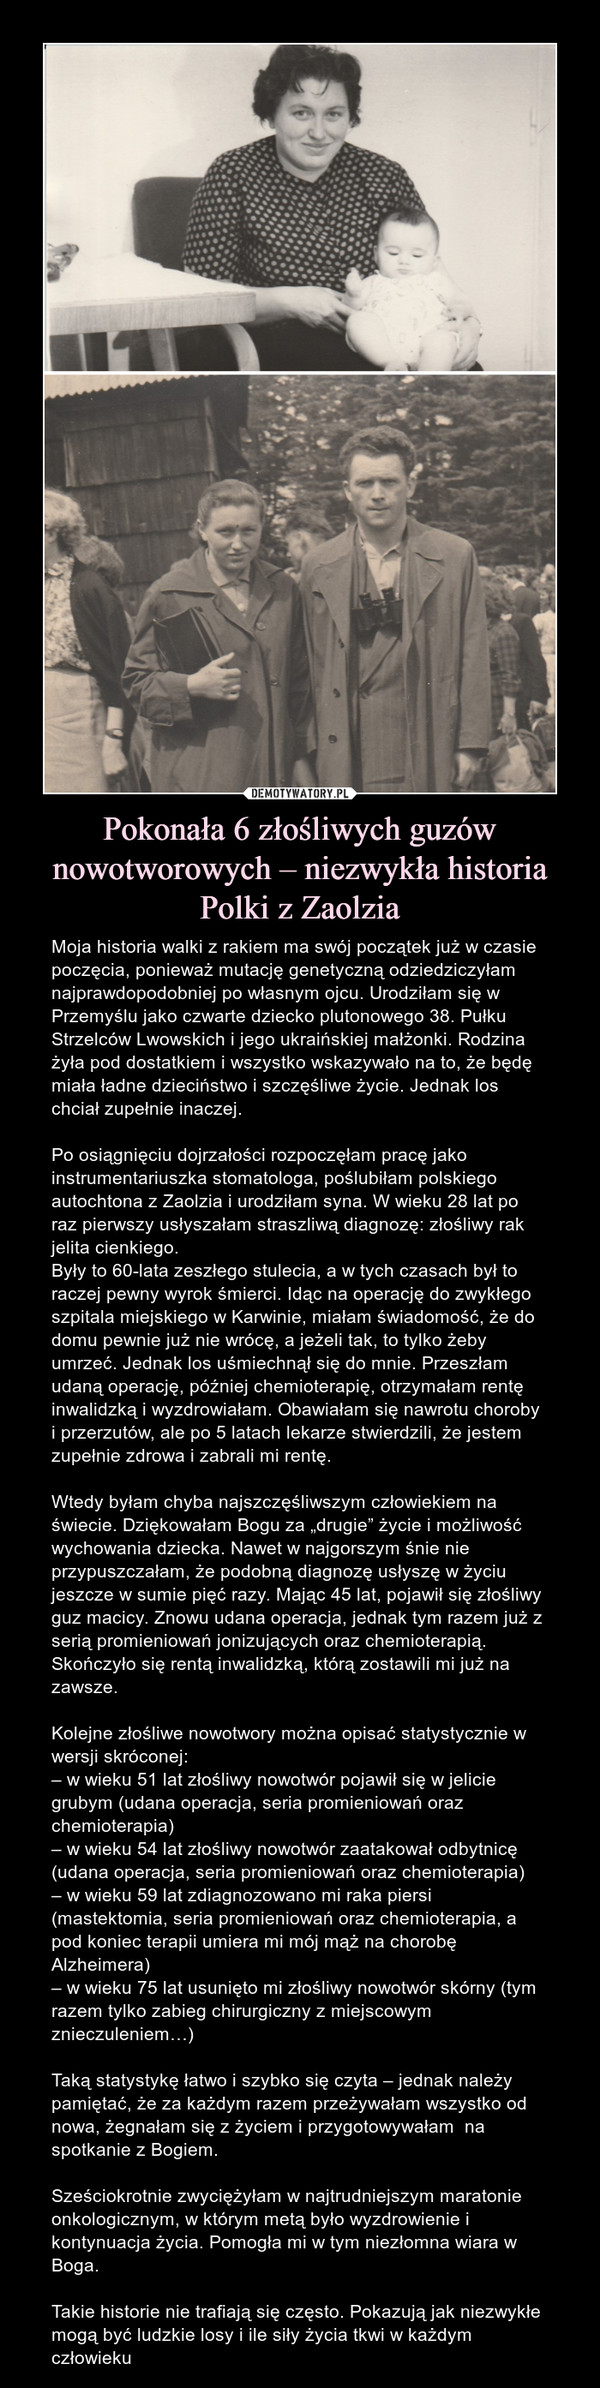 Pokonała 6 złośliwych guzów nowotworowych – niezwykła historia Polki z Zaolzia – Moja historia walki z rakiem ma swój początek już w czasie poczęcia, ponieważ mutację genetyczną odziedziczyłam najprawdopodobniej po własnym ojcu. Urodziłam się w Przemyślu jako czwarte dziecko plutonowego 38. Pułku Strzelców Lwowskich i jego ukraińskiej małżonki. Rodzina żyła pod dostatkiem i wszystko wskazywało na to, że będę miała ładne dzieciństwo i szczęśliwe życie. Jednak los chciał zupełnie inaczej. Po osiągnięciu dojrzałości rozpoczęłam pracę jako instrumentariuszka stomatologa, poślubiłam polskiego autochtona z Zaolzia i urodziłam syna. W wieku 28 lat po raz pierwszy usłyszałam straszliwą diagnozę: złośliwy rak jelita cienkiego.Były to 60-lata zeszłego stulecia, a w tych czasach był to raczej pewny wyrok śmierci. Idąc na operację do zwykłego szpitala miejskiego w Karwinie, miałam świadomość, że do domu pewnie już nie wrócę, a jeżeli tak, to tylko żeby umrzeć. Jednak los uśmiechnął się do mnie. Przeszłam udaną operację, później chemioterapię, otrzymałam rentę inwalidzką i wyzdrowiałam. Obawiałam się nawrotu choroby i przerzutów, ale po 5 latach lekarze stwierdzili, że jestem zupełnie zdrowa i zabrali mi rentę.Wtedy byłam chyba najszczęśliwszym człowiekiem na świecie. Dziękowałam Bogu za „drugie” życie i możliwość wychowania dziecka. Nawet w najgorszym śnie nie przypuszczałam, że podobną diagnozę usłyszę w życiu jeszcze w sumie pięć razy. Mając 45 lat, pojawił się złośliwy guz macicy. Znowu udana operacja, jednak tym razem już z serią promieniowań jonizujących oraz chemioterapią. Skończyło się rentą inwalidzką, którą zostawili mi już na zawsze.Kolejne złośliwe nowotwory można opisać statystycznie w wersji skróconej:– w wieku 51 lat złośliwy nowotwór pojawił się w jelicie grubym (udana operacja, seria promieniowań oraz chemioterapia)– w wieku 54 lat złośliwy nowotwór zaatakował odbytnicę (udana operacja, seria promieniowań oraz chemioterapia)– w wieku 59 lat zdiagnozowano mi raka piersi (mastektomia, seria promieniowań oraz chemioterapia, a pod koniec terapii umiera mi mój mąż na chorobę Alzheimera)– w wieku 75 lat usunięto mi złośliwy nowotwór skórny (tym razem tylko zabieg chirurgiczny z miejscowym znieczuleniem…)Taką statystykę łatwo i szybko się czyta – jednak należy pamiętać, że za każdym razem przeżywałam wszystko od nowa, żegnałam się z życiem i przygotowywałam  na spotkanie z Bogiem. Sześciokrotnie zwyciężyłam w najtrudniejszym maratonie onkologicznym, w którym metą było wyzdrowienie i kontynuacja życia. Pomogła mi w tym niezłomna wiara w Boga.Takie historie nie trafiają się często. Pokazują jak niezwykłe mogą być ludzkie losy i ile siły życia tkwi w każdym człowieku  